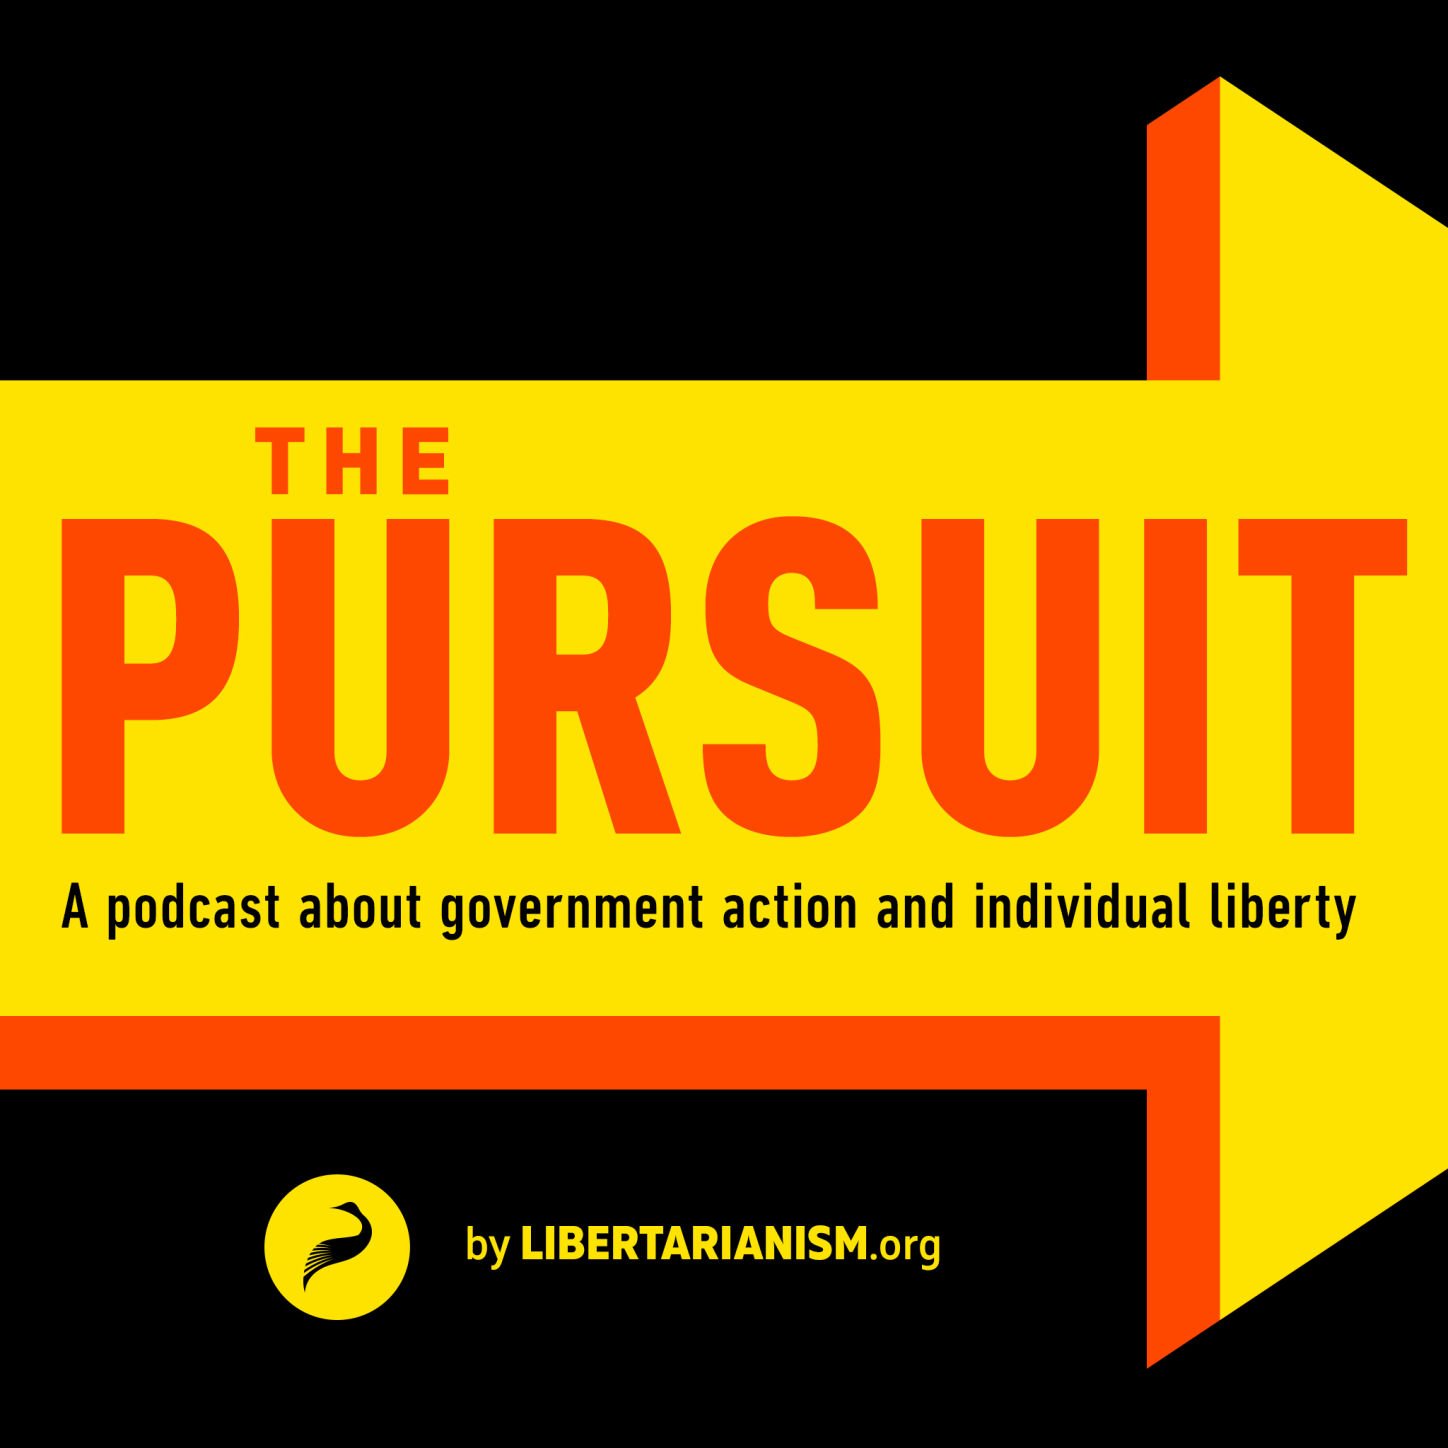 The Pursuit Podcast